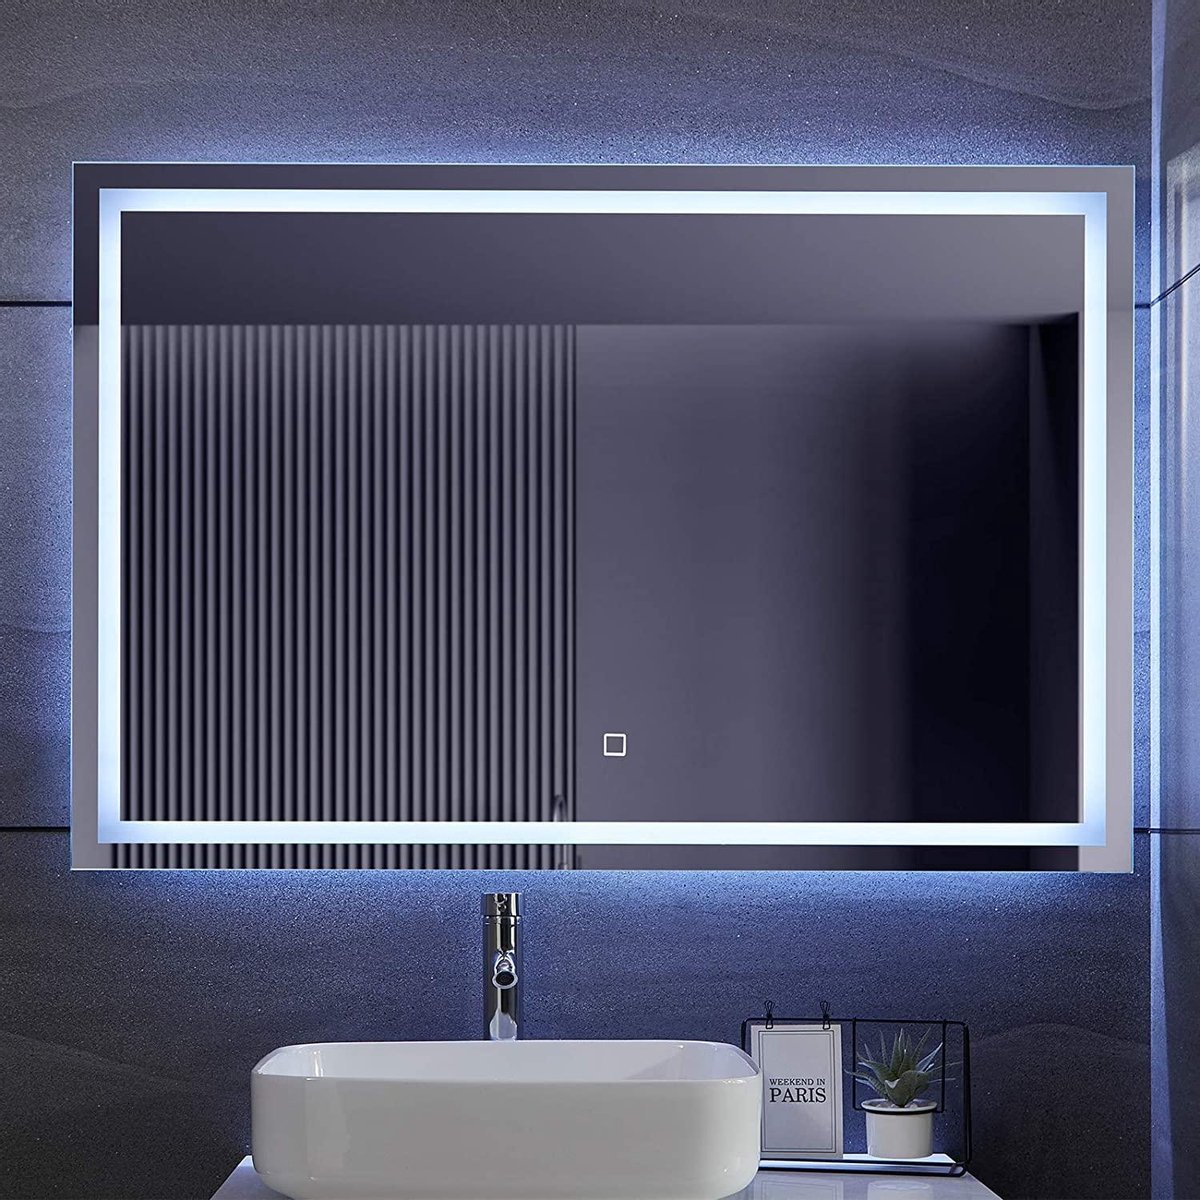 Miroir de salle de bain LED 120x80 cm dimmable, fonction anti-buée | bol.com